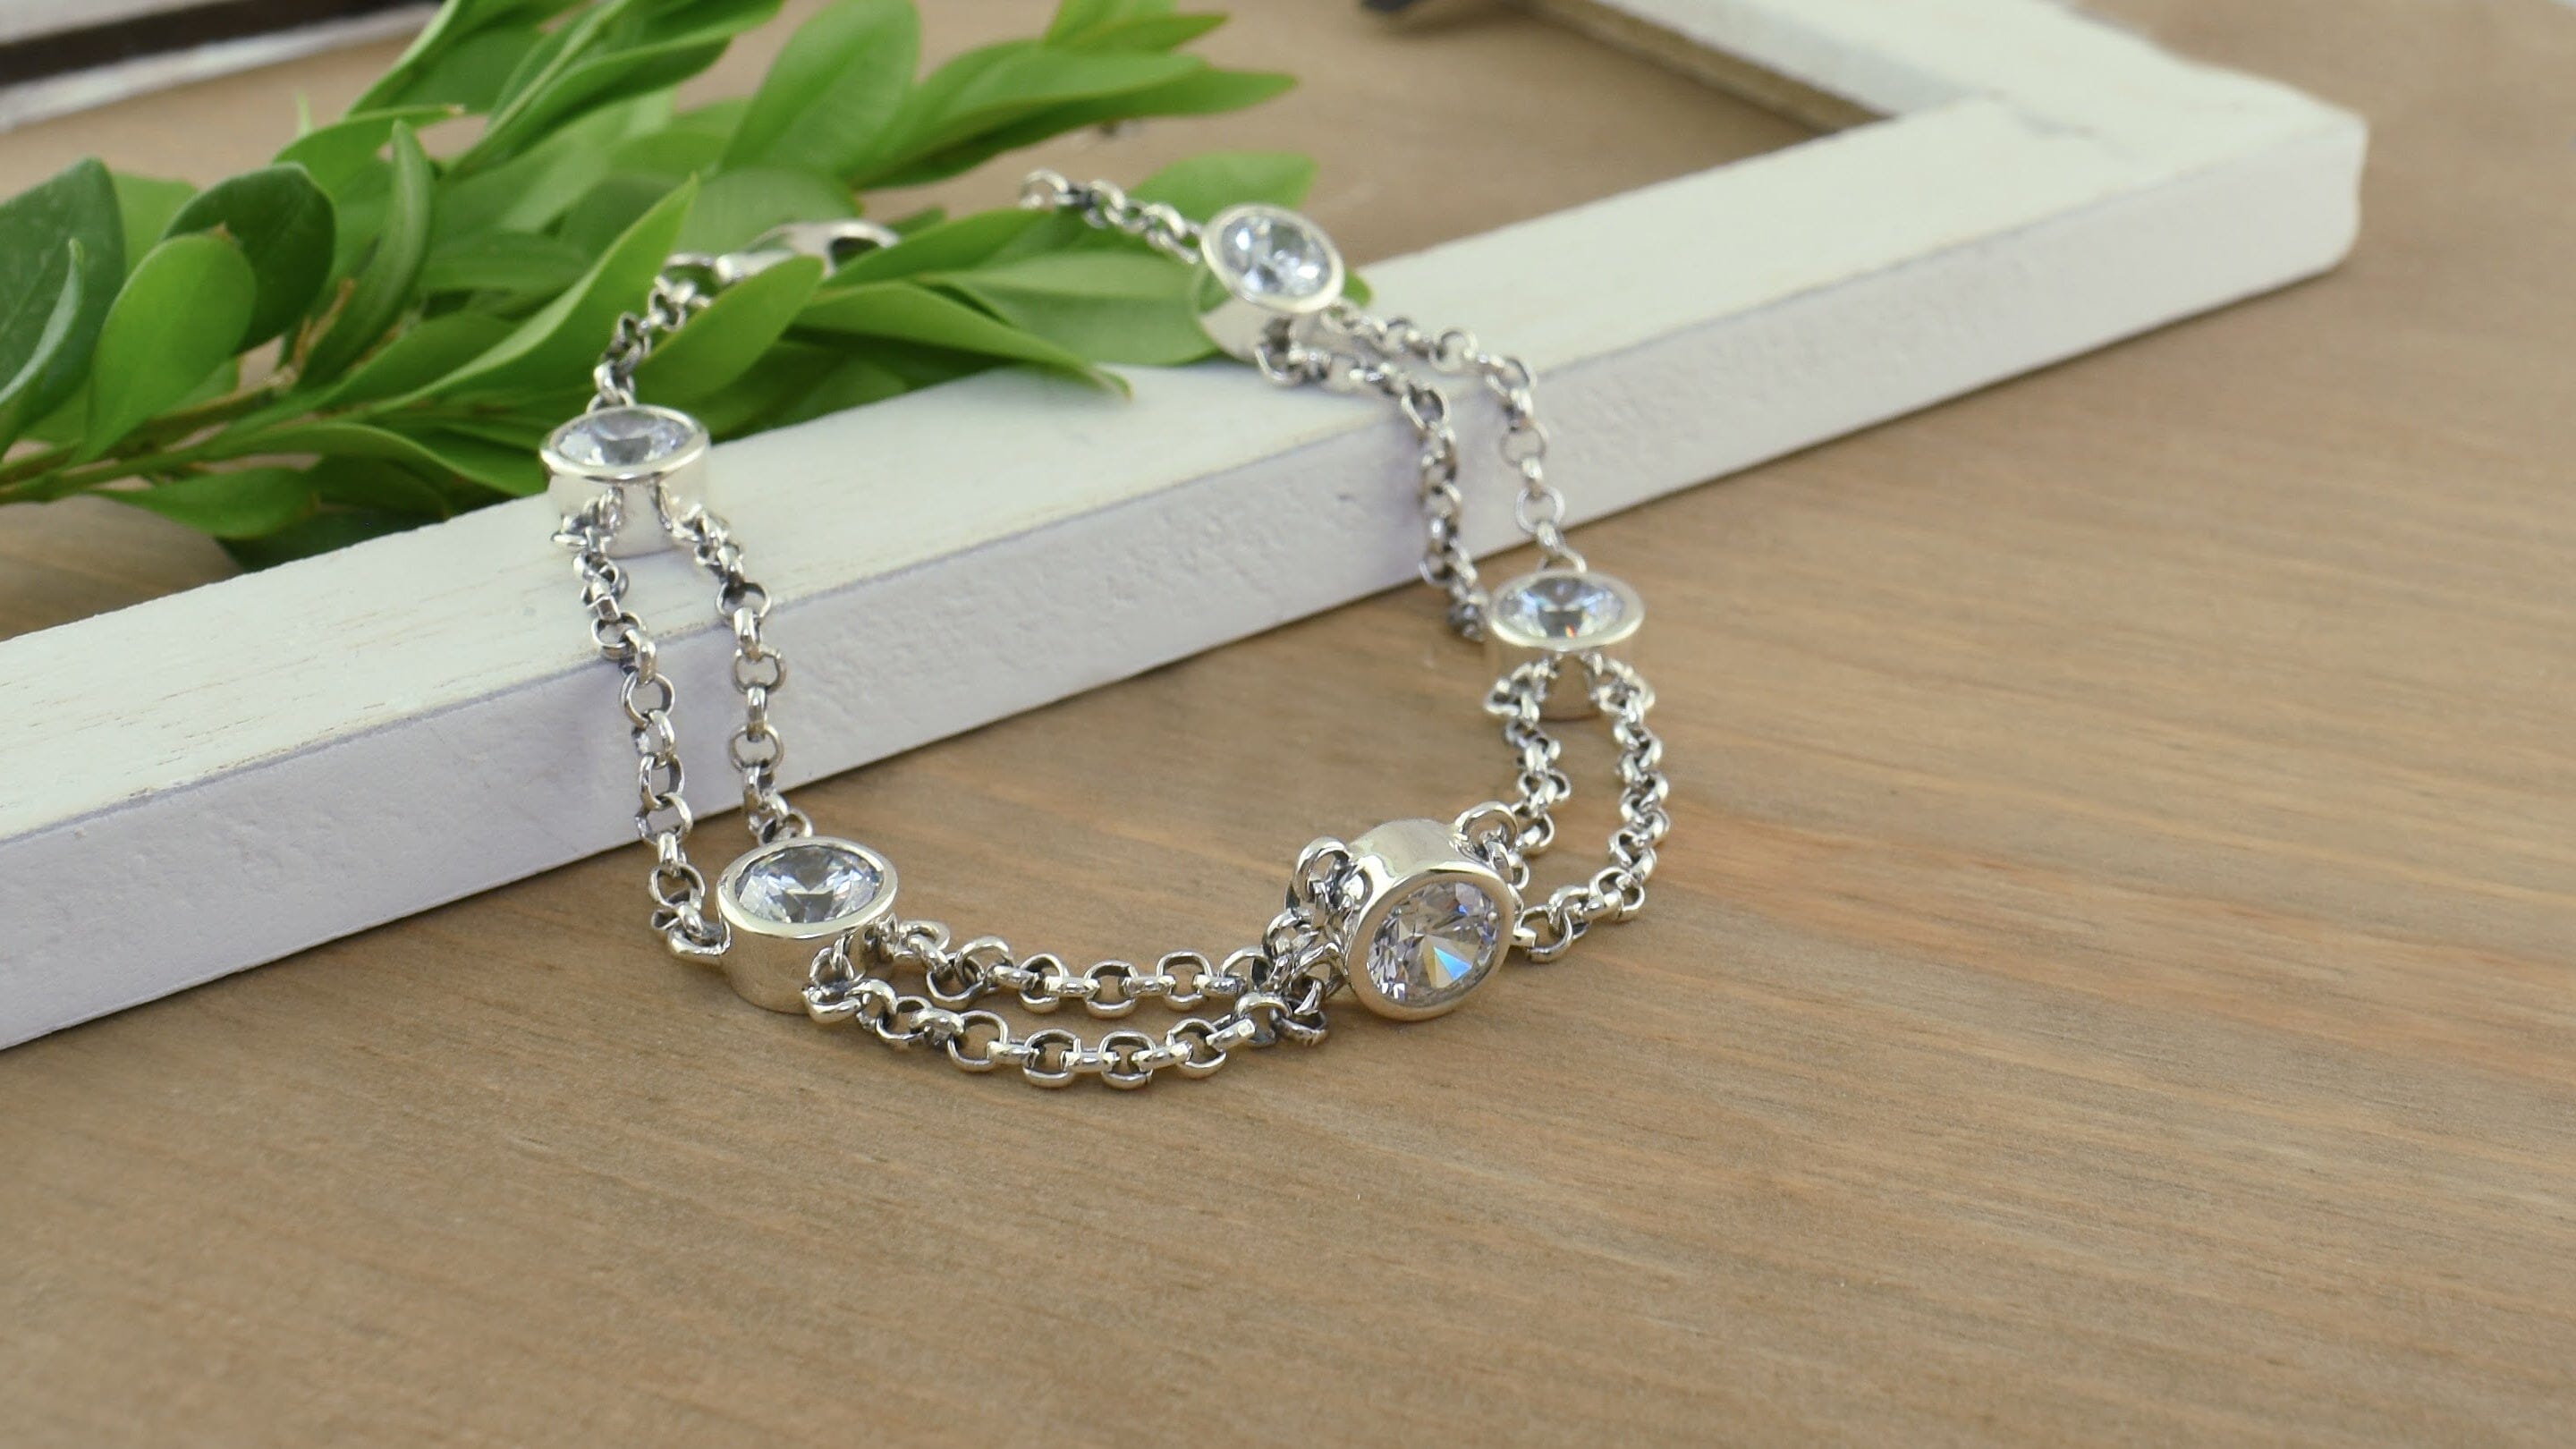 Sterling Silver Bracelet for Women Silver Chain Bracelet 